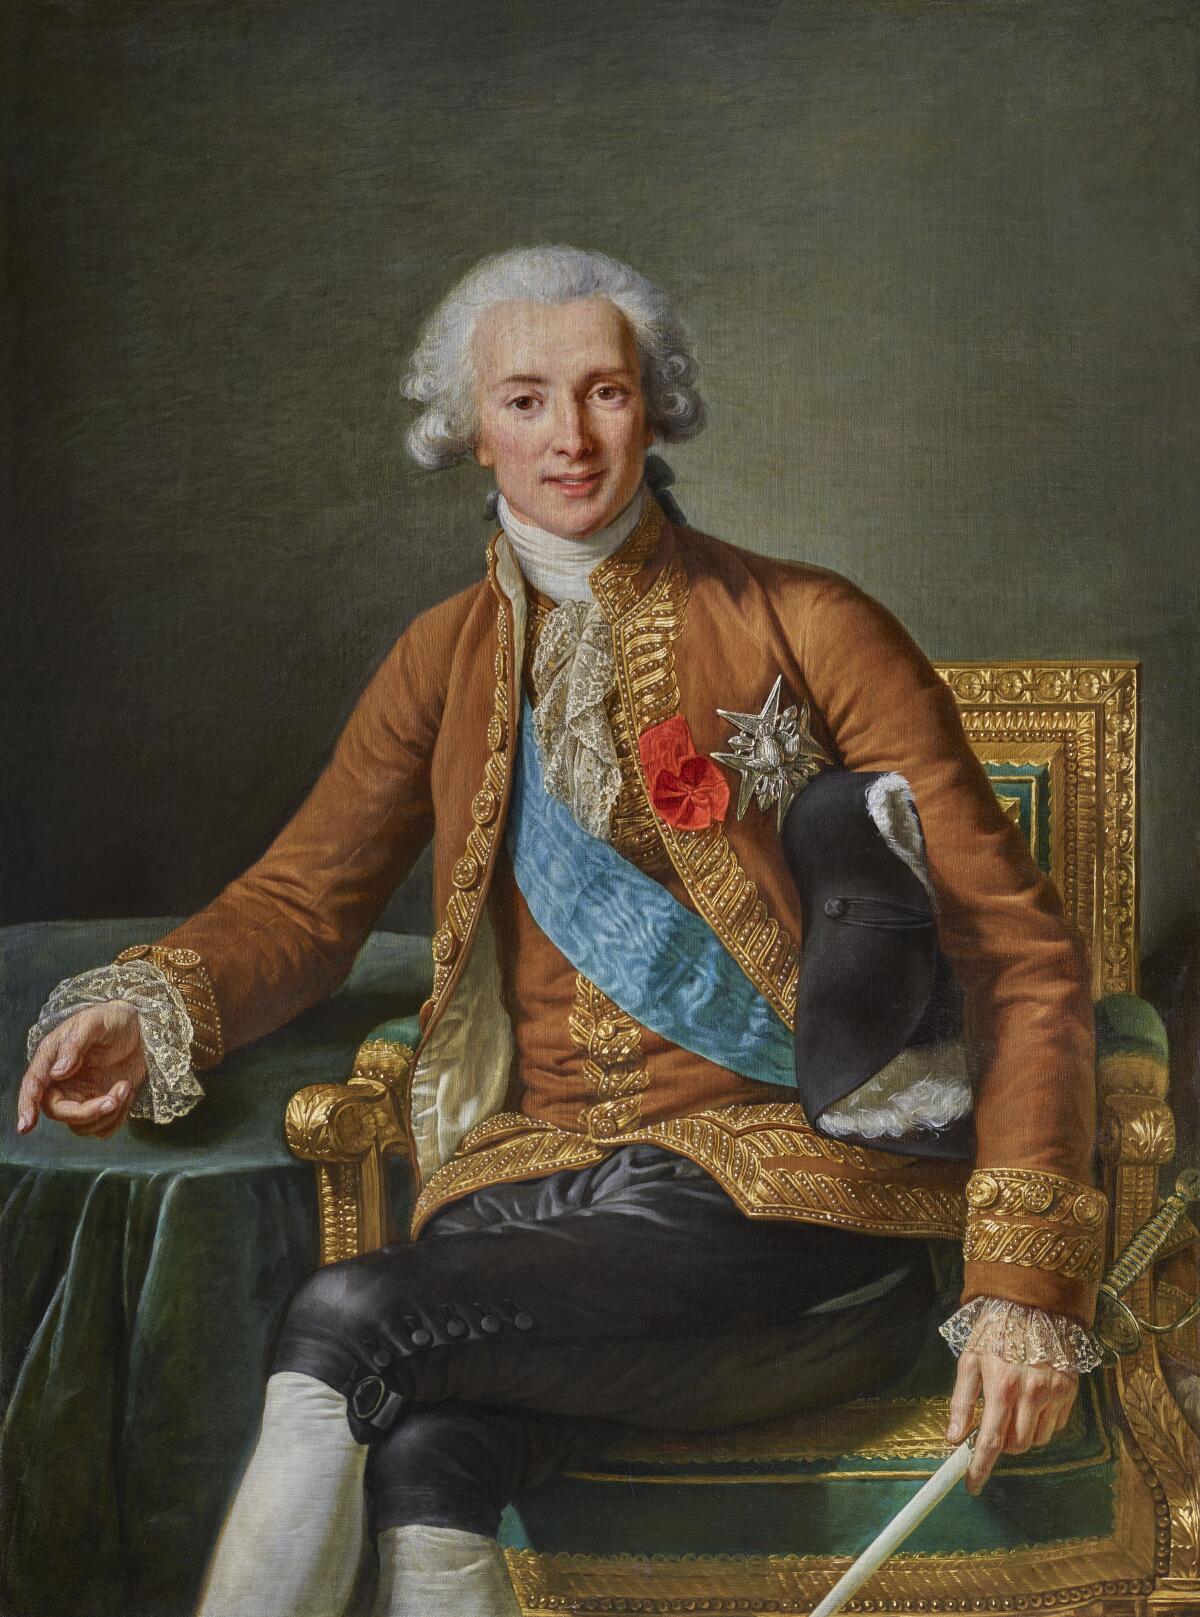 Elisabeth Louise Vigée Le Brun, "Portrait of Joseph Hyacinthe Francois-de-Paule de Rigoud, comte de Vaudreuil." 